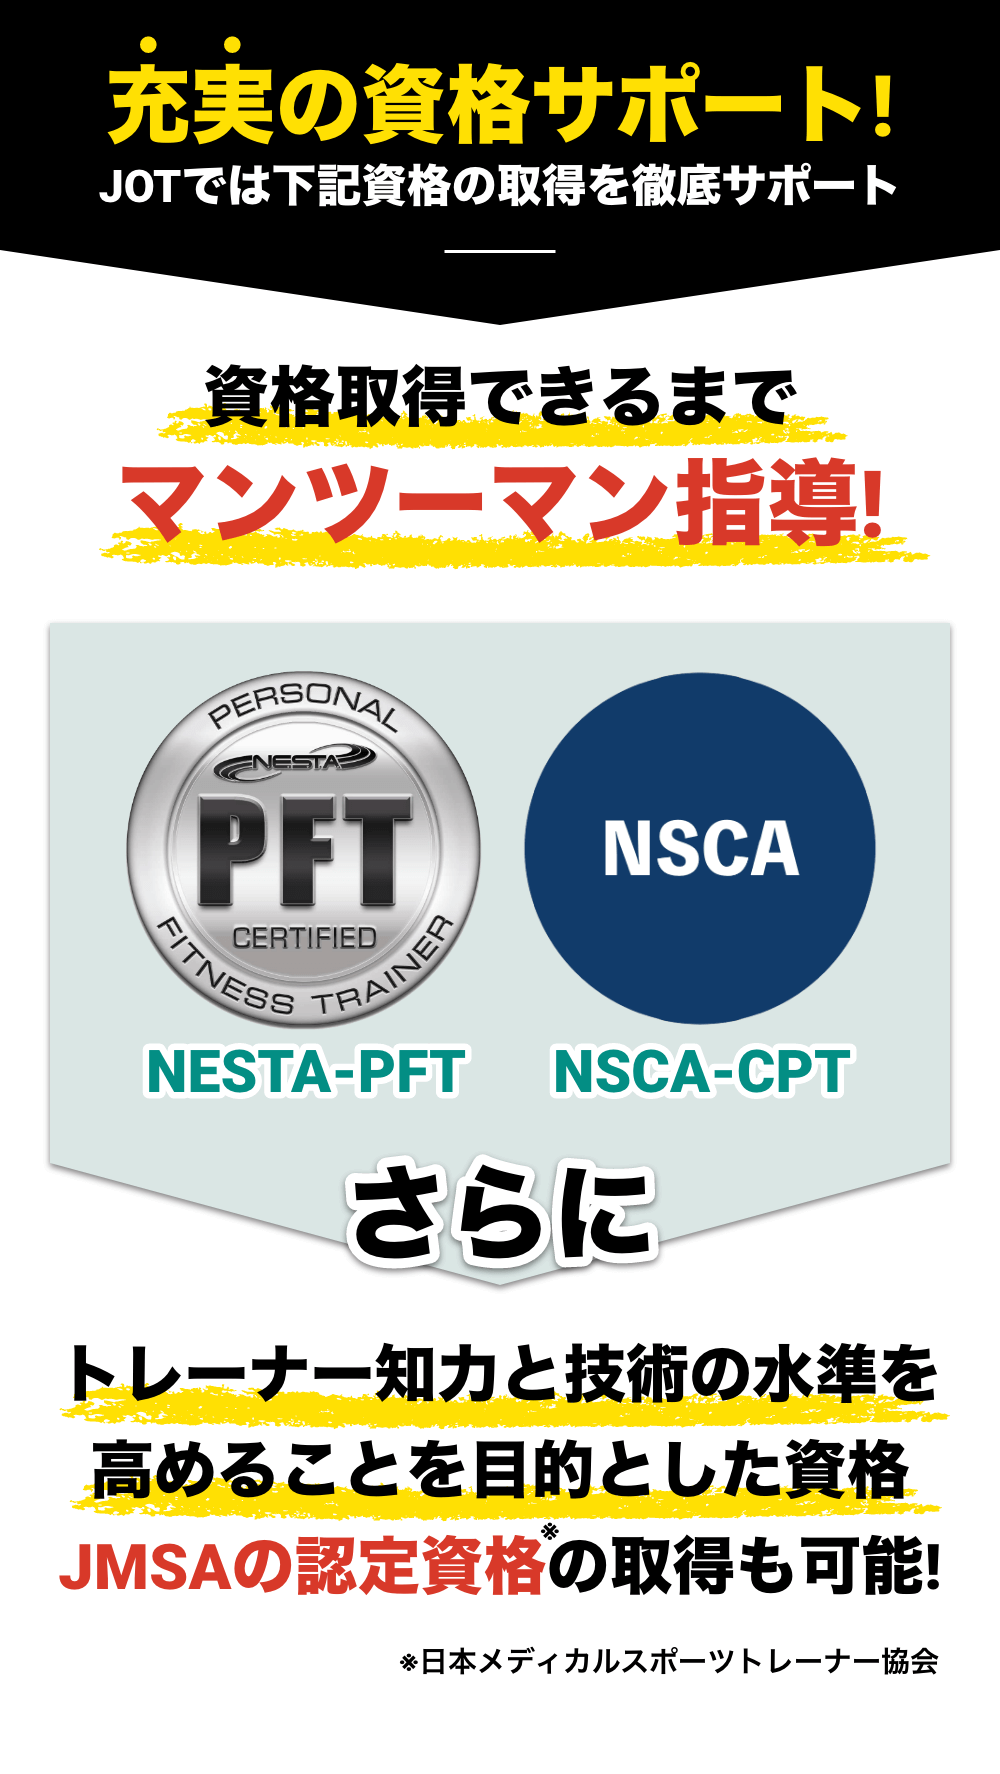 充実の資格サポート！NESTA-PFT NSCA-CPT JMSAの認定資格の取得も可能!